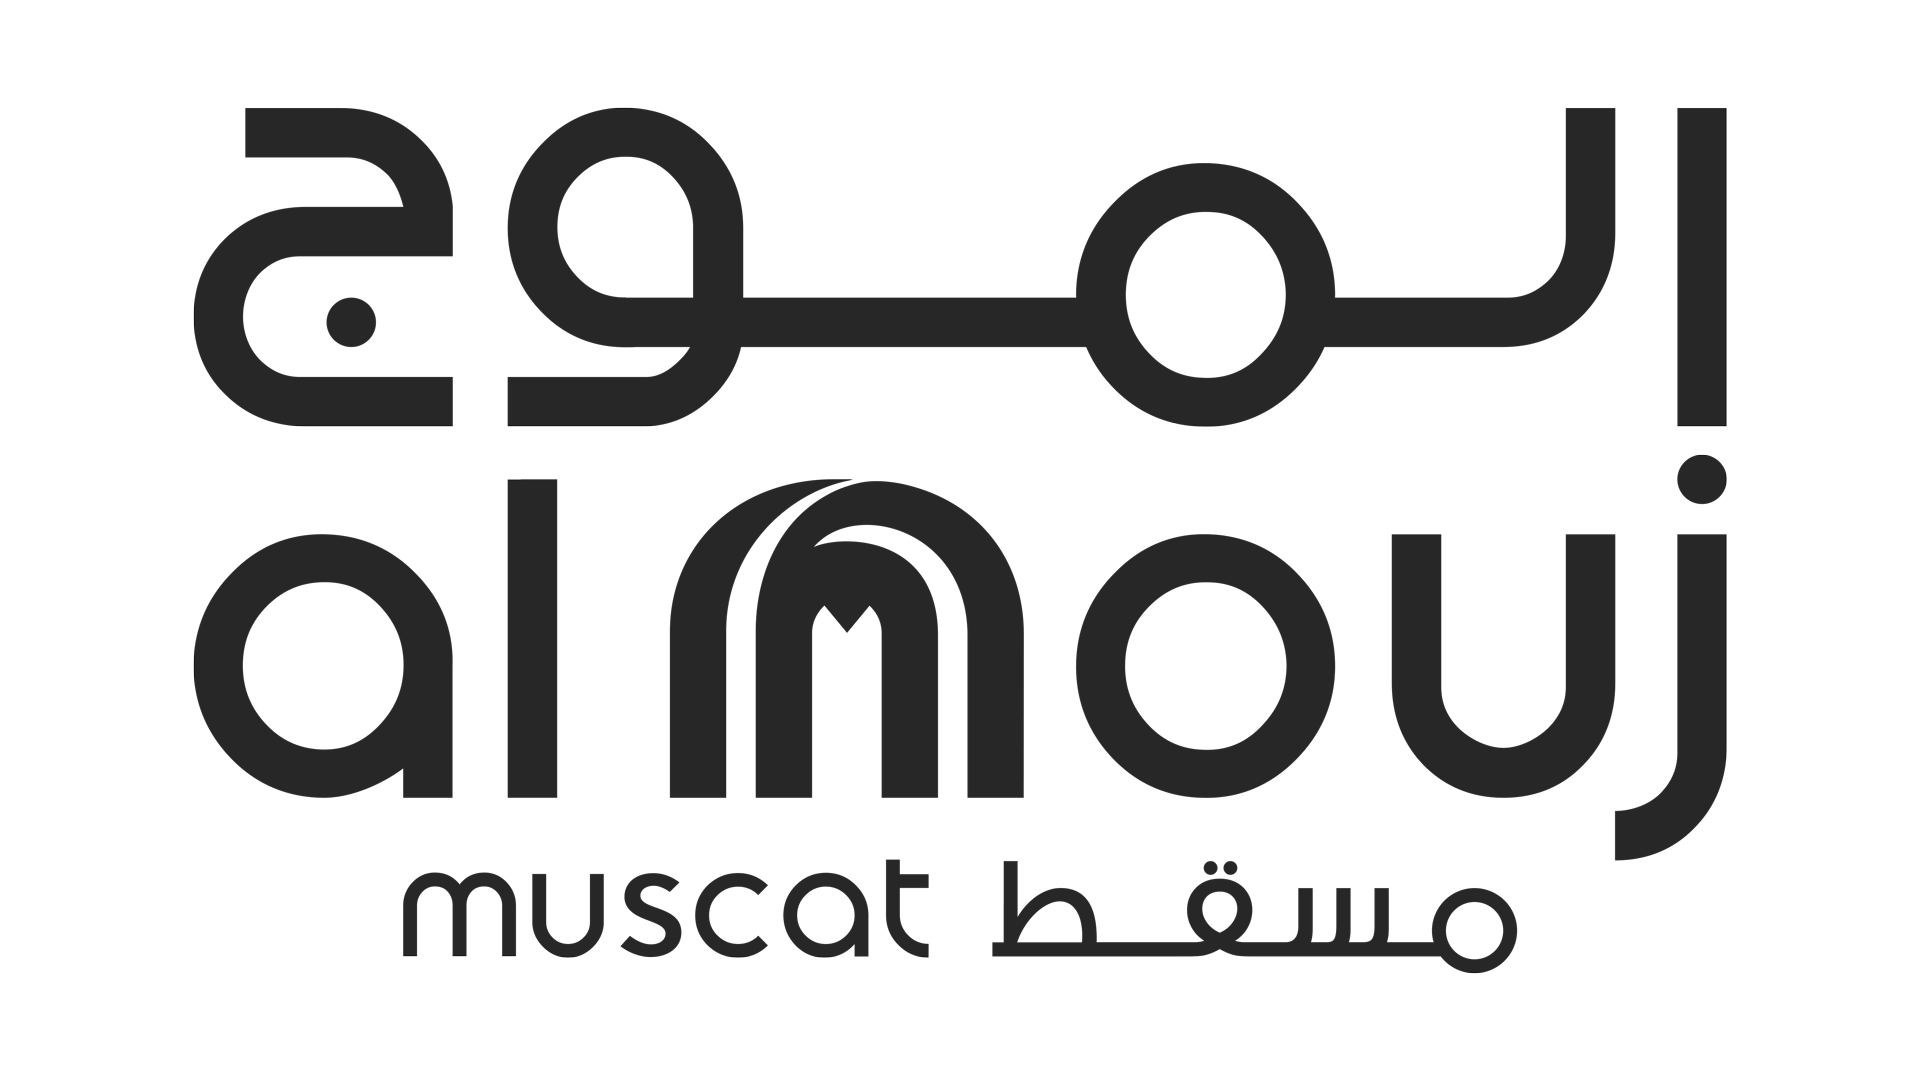 Al-mouj-logo.png